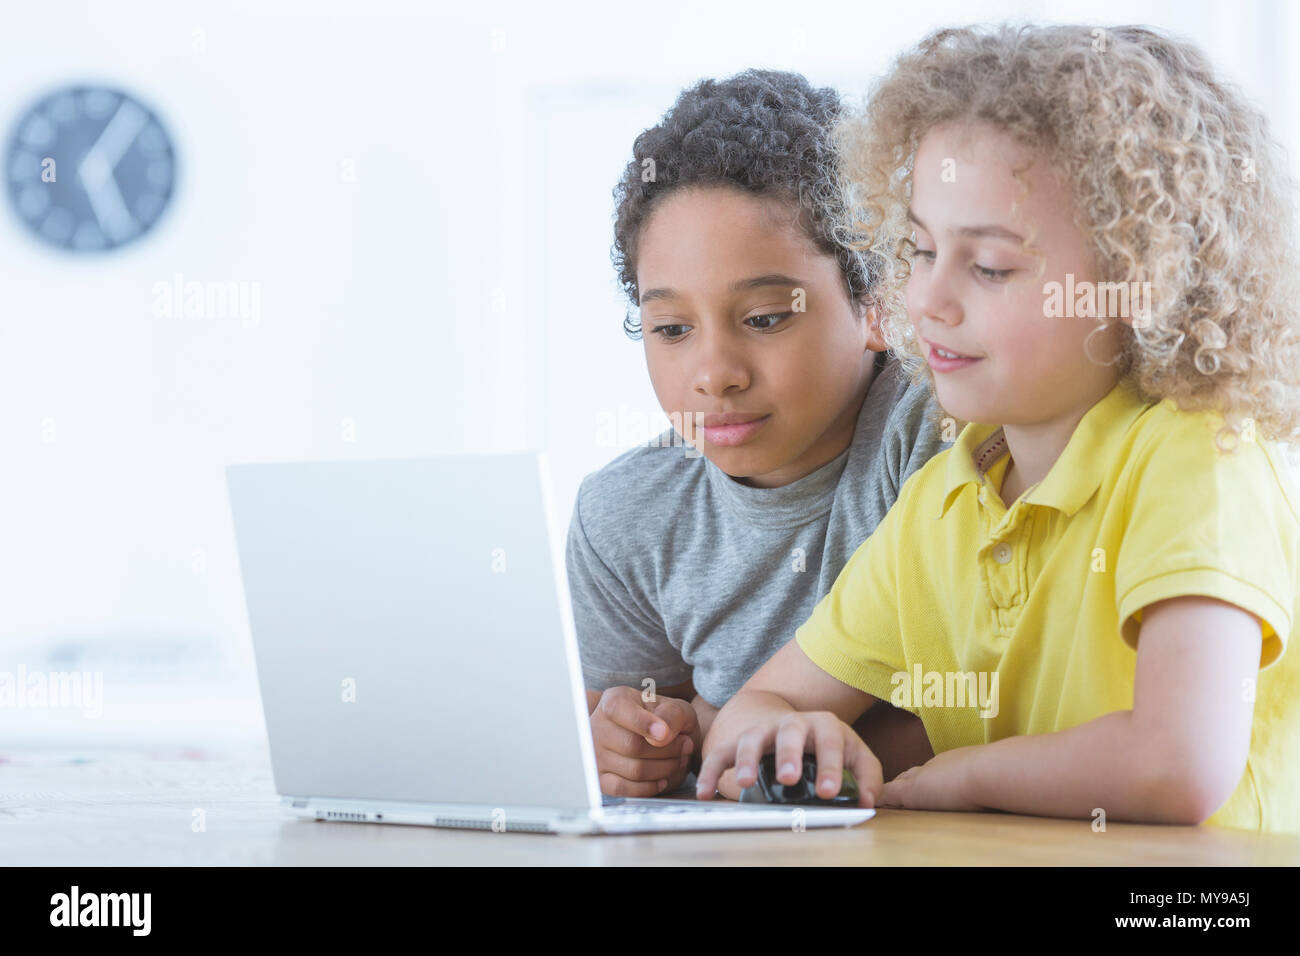 Afro-american boy mira a su amigo que está programando con laptop, concepto de escuela multicultural Foto de stock